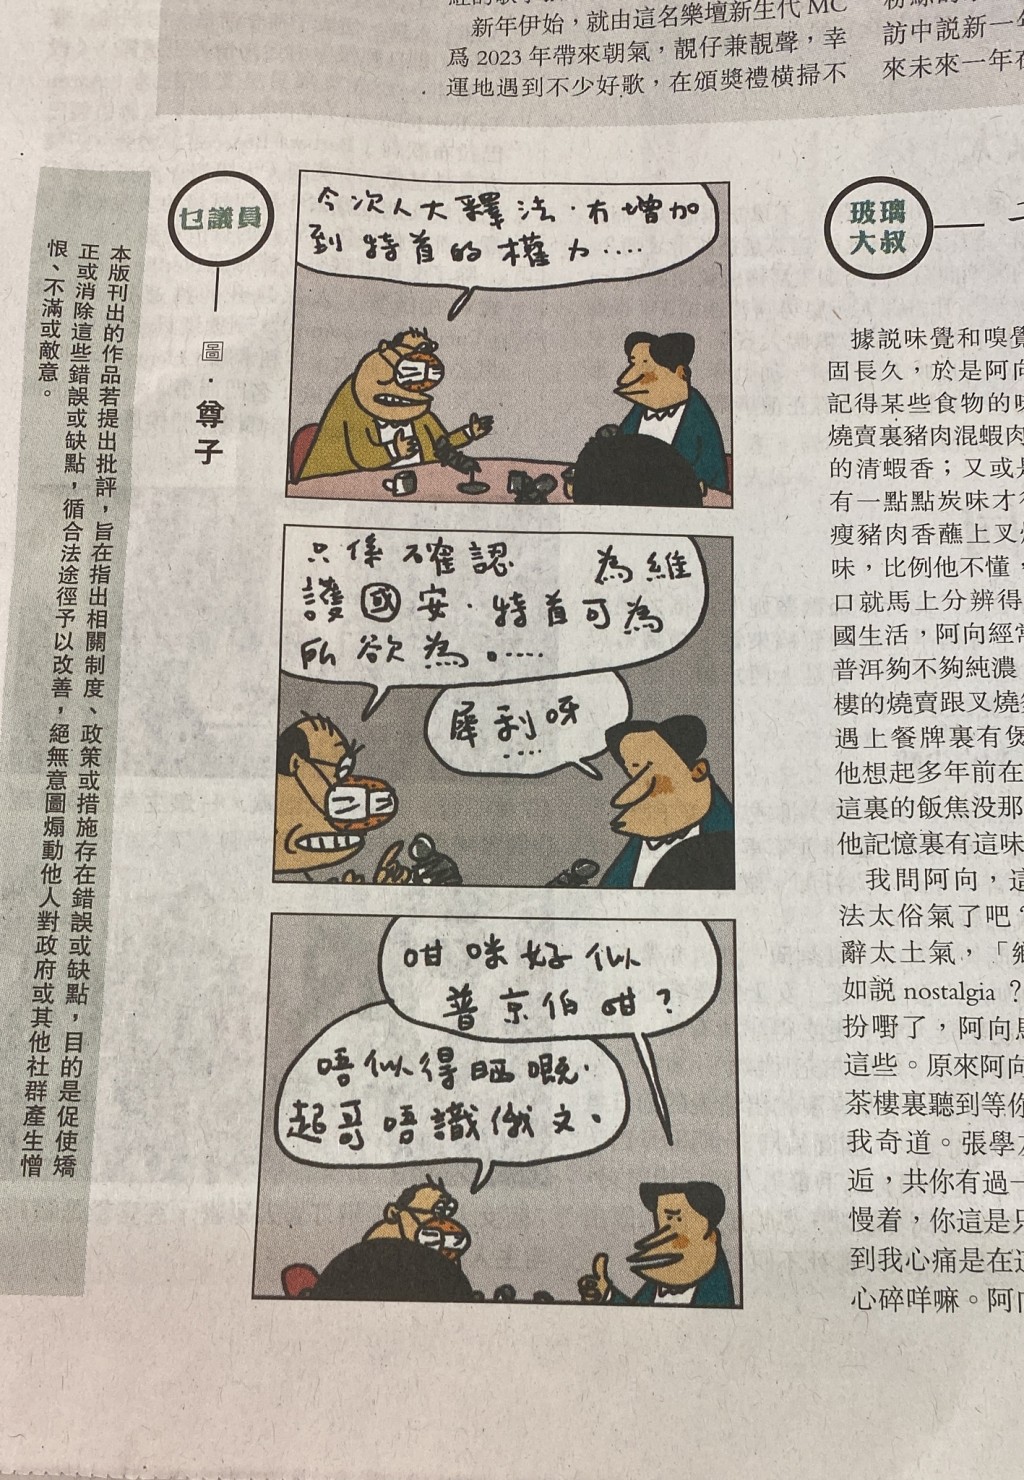 政務司司長陳國基在社交網站發貼文，點名《明報》今日刊登，有關《香港國安法》解釋的尊子漫畫。